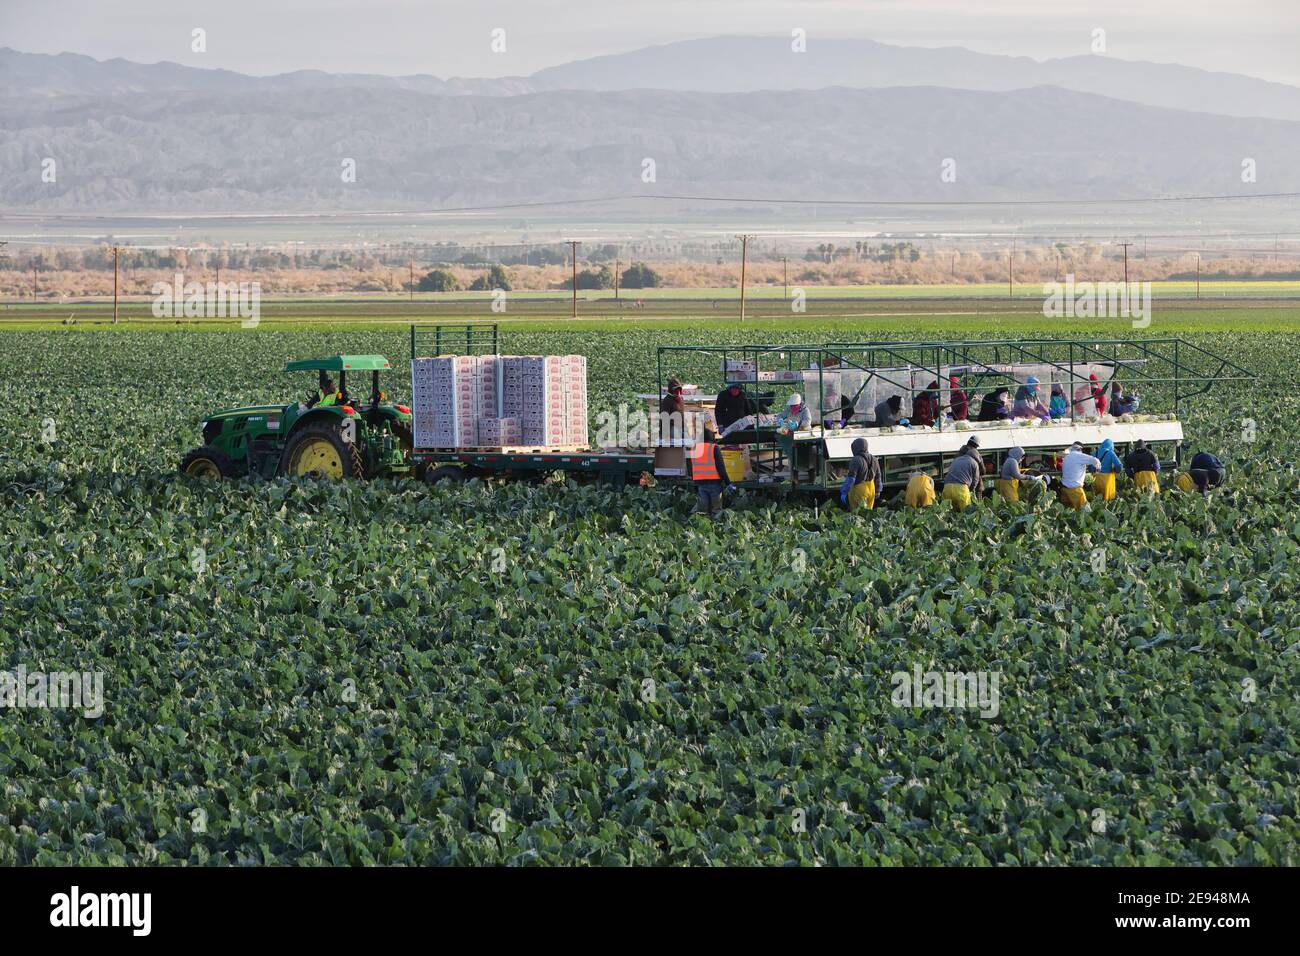 Hispanische Landarbeiter ernten - Verpacken von Bio-Blumenkohl 'Brassica oleracea var. botrytis', John Deere Traktor, frühmorgendliches Licht, Kalifornien. Stockfoto